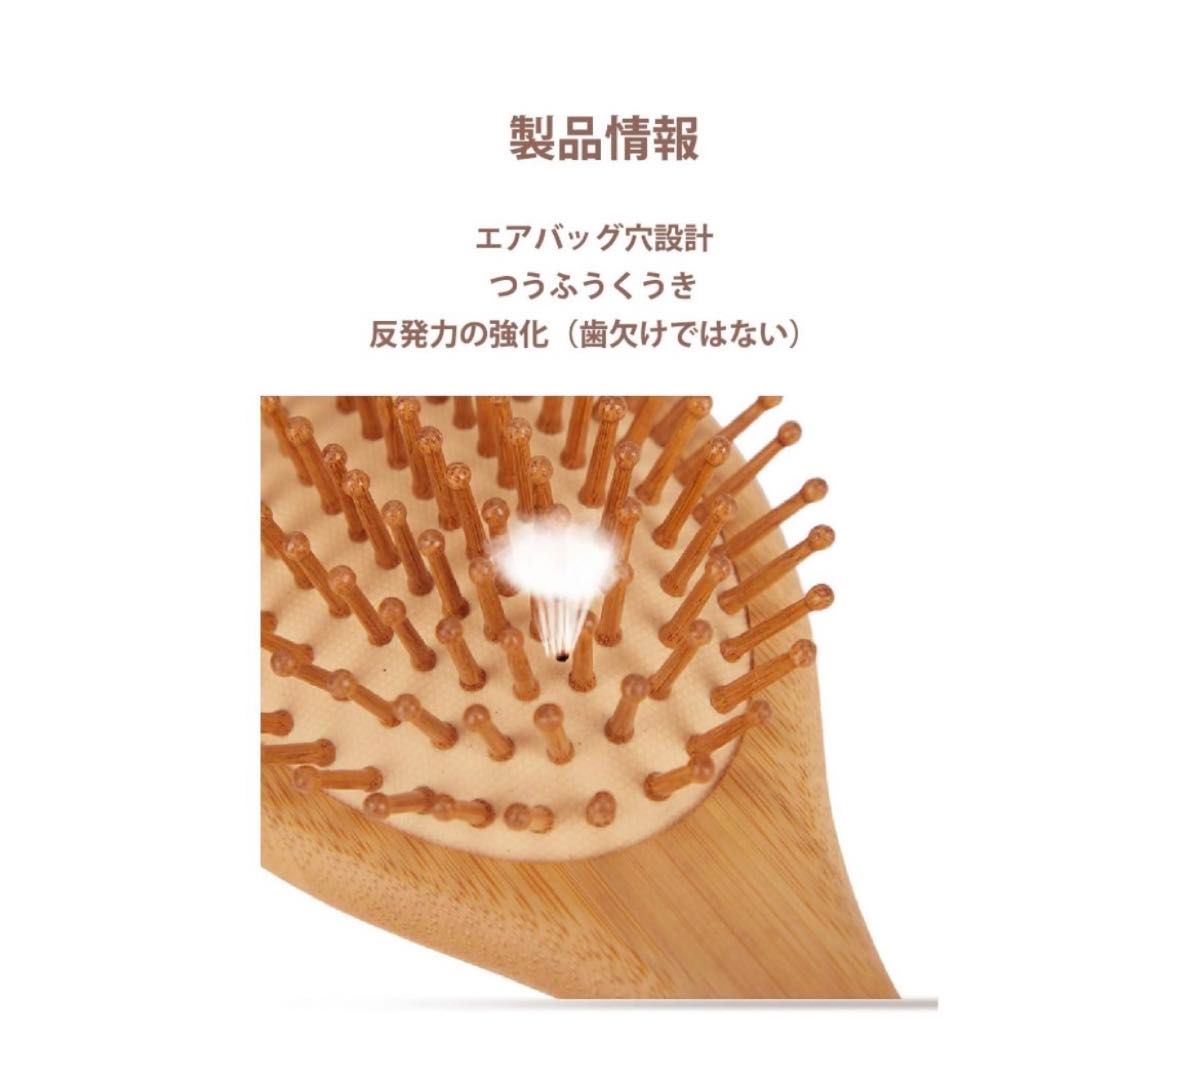 XIANGUO ヘアブラシ 竹製櫛 美髪ケア 頭皮 マッサージ 静電気防止 エアクッションヘアブラシ (矩形) 新品 プレゼント